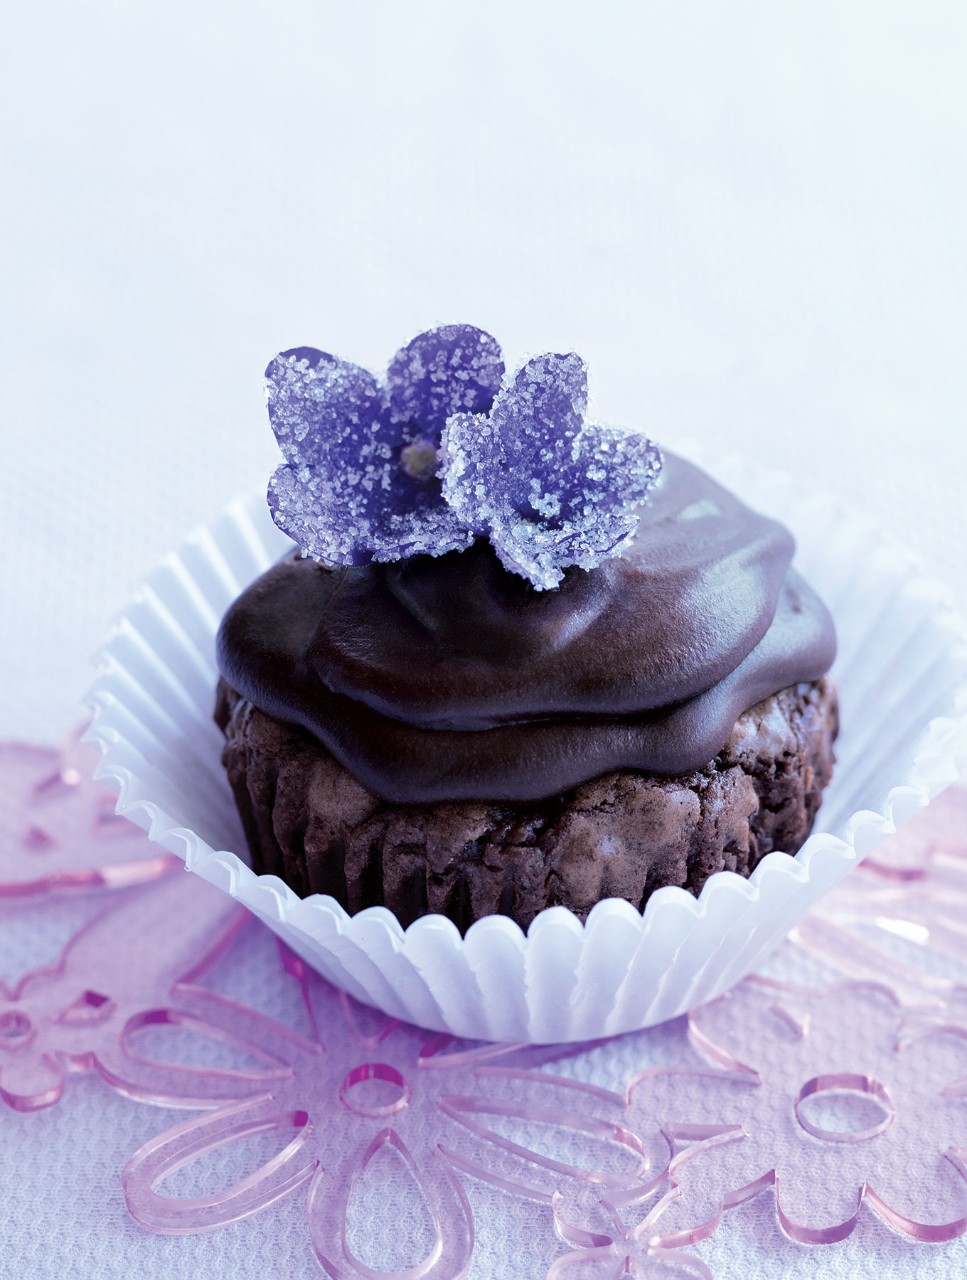 Petits gâteaux-brownies au chocolat noir